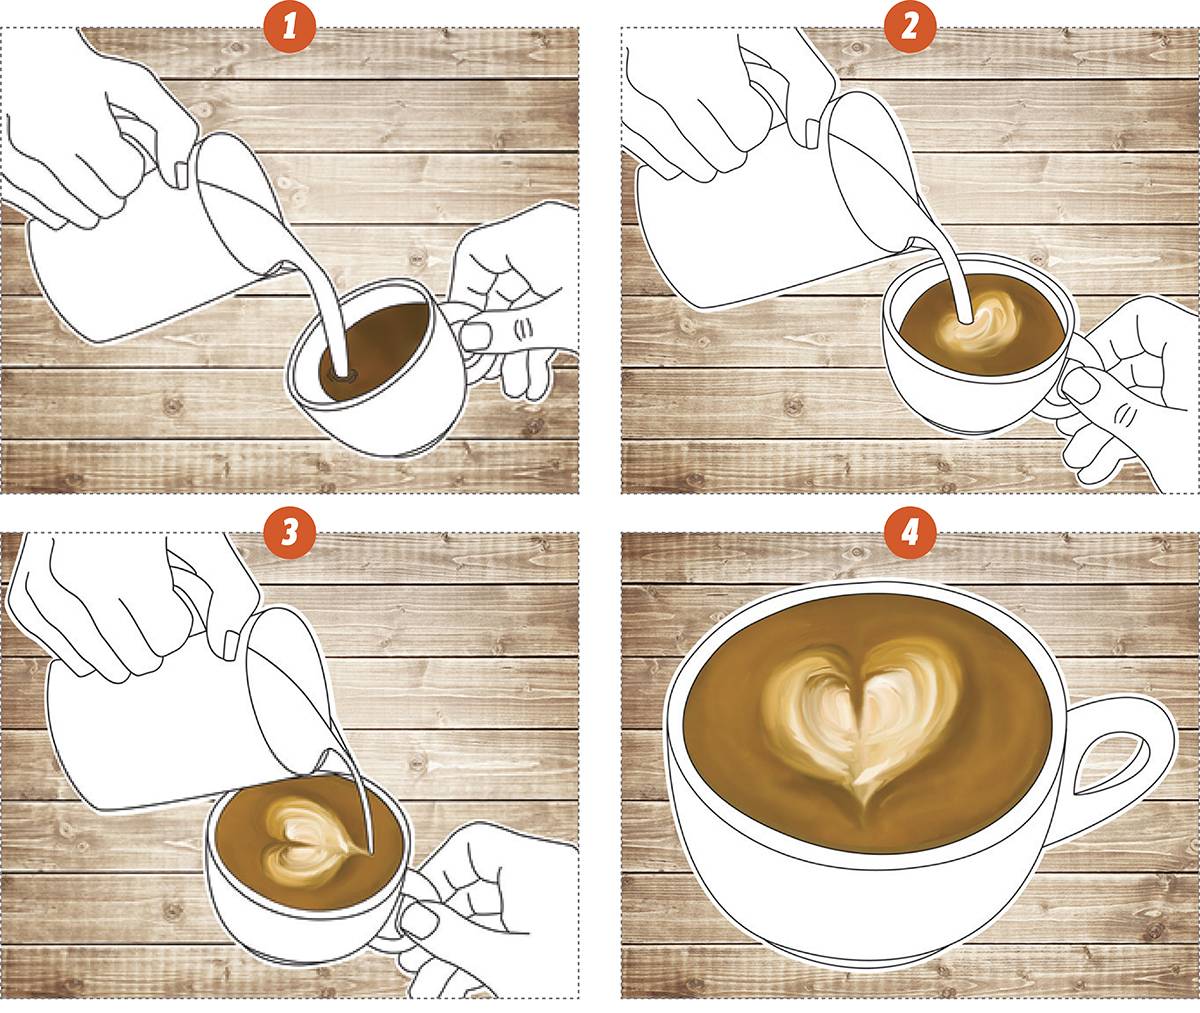 Как правильно держать палочку для кофе. как правильно размешивать кофе пластиковой или деревянной палочкой